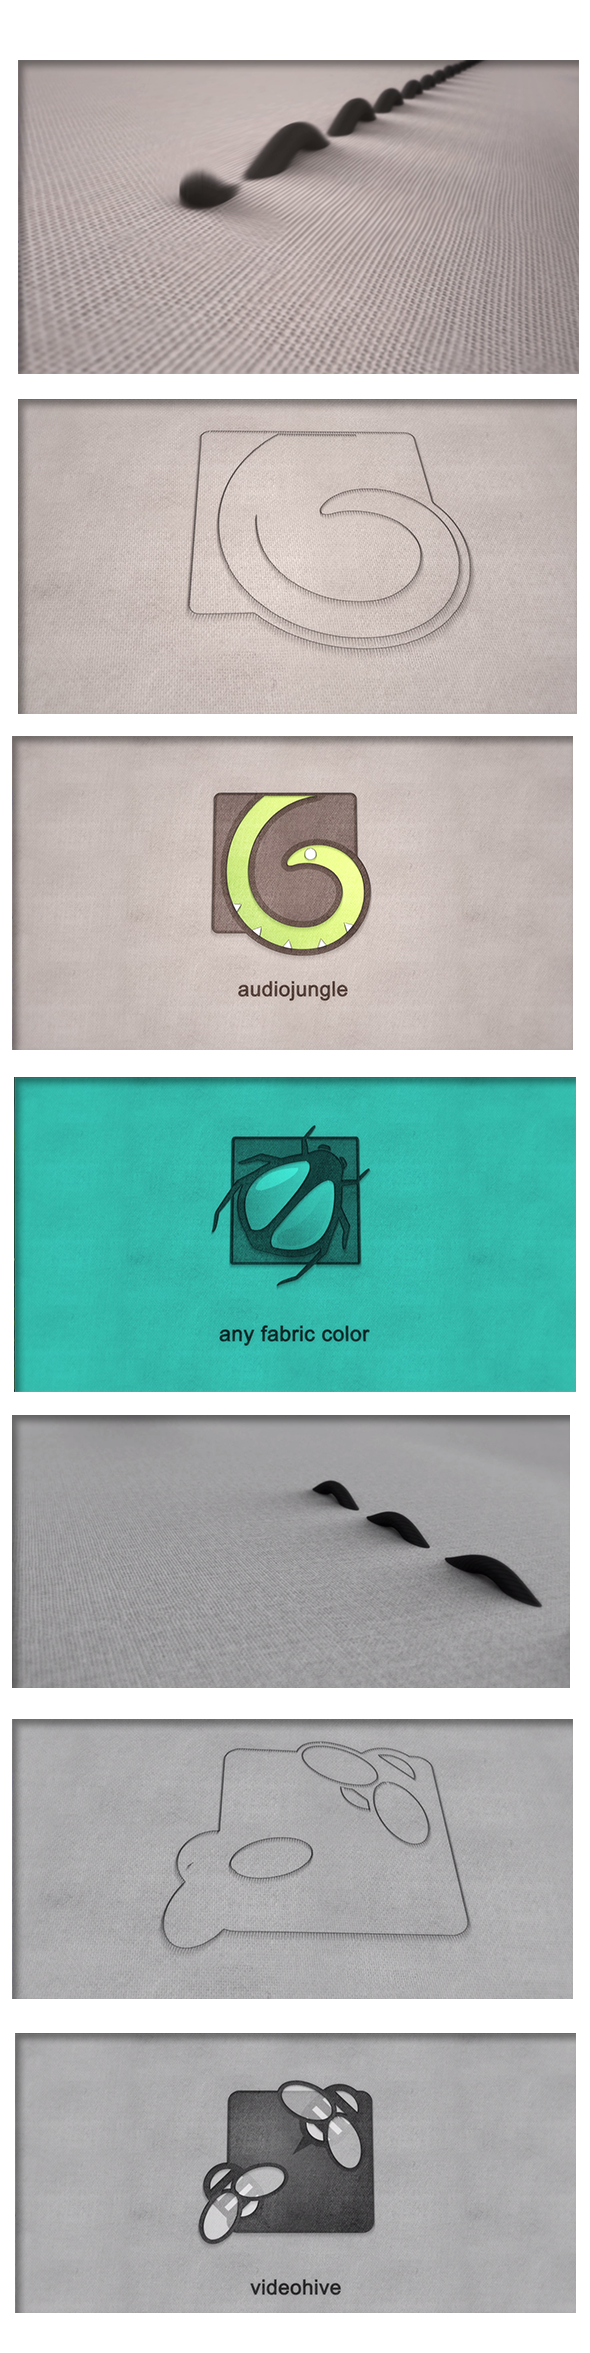 Thread - An Elegant Fabric Sewing Logo Reveal - 2